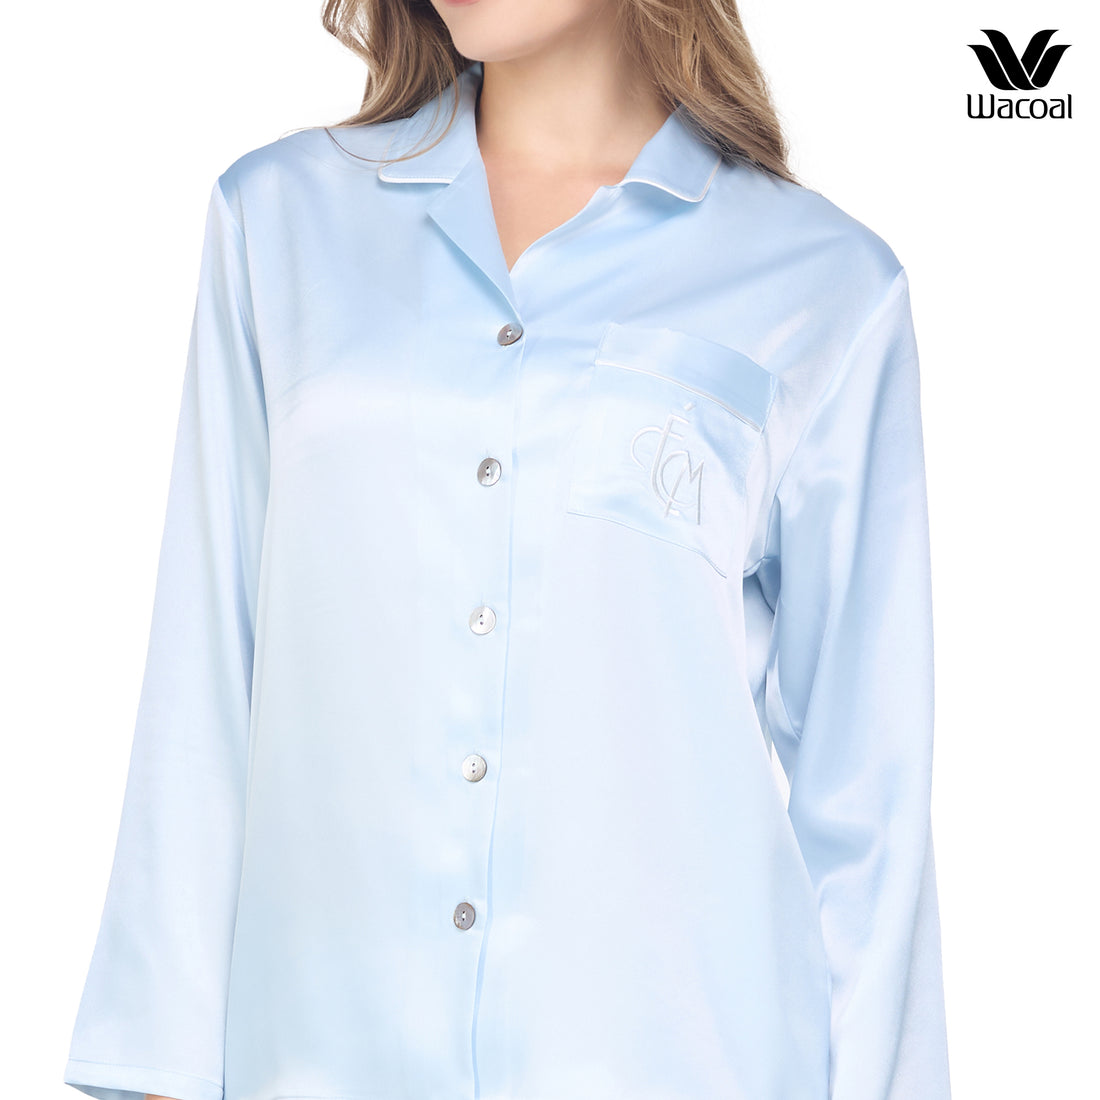 Wacoal Sleep Wear ชุดนอนผ้า Satin Set แขนยาว ขายาว รุ่น WN7E19 สีฟ้าคราม (SM)